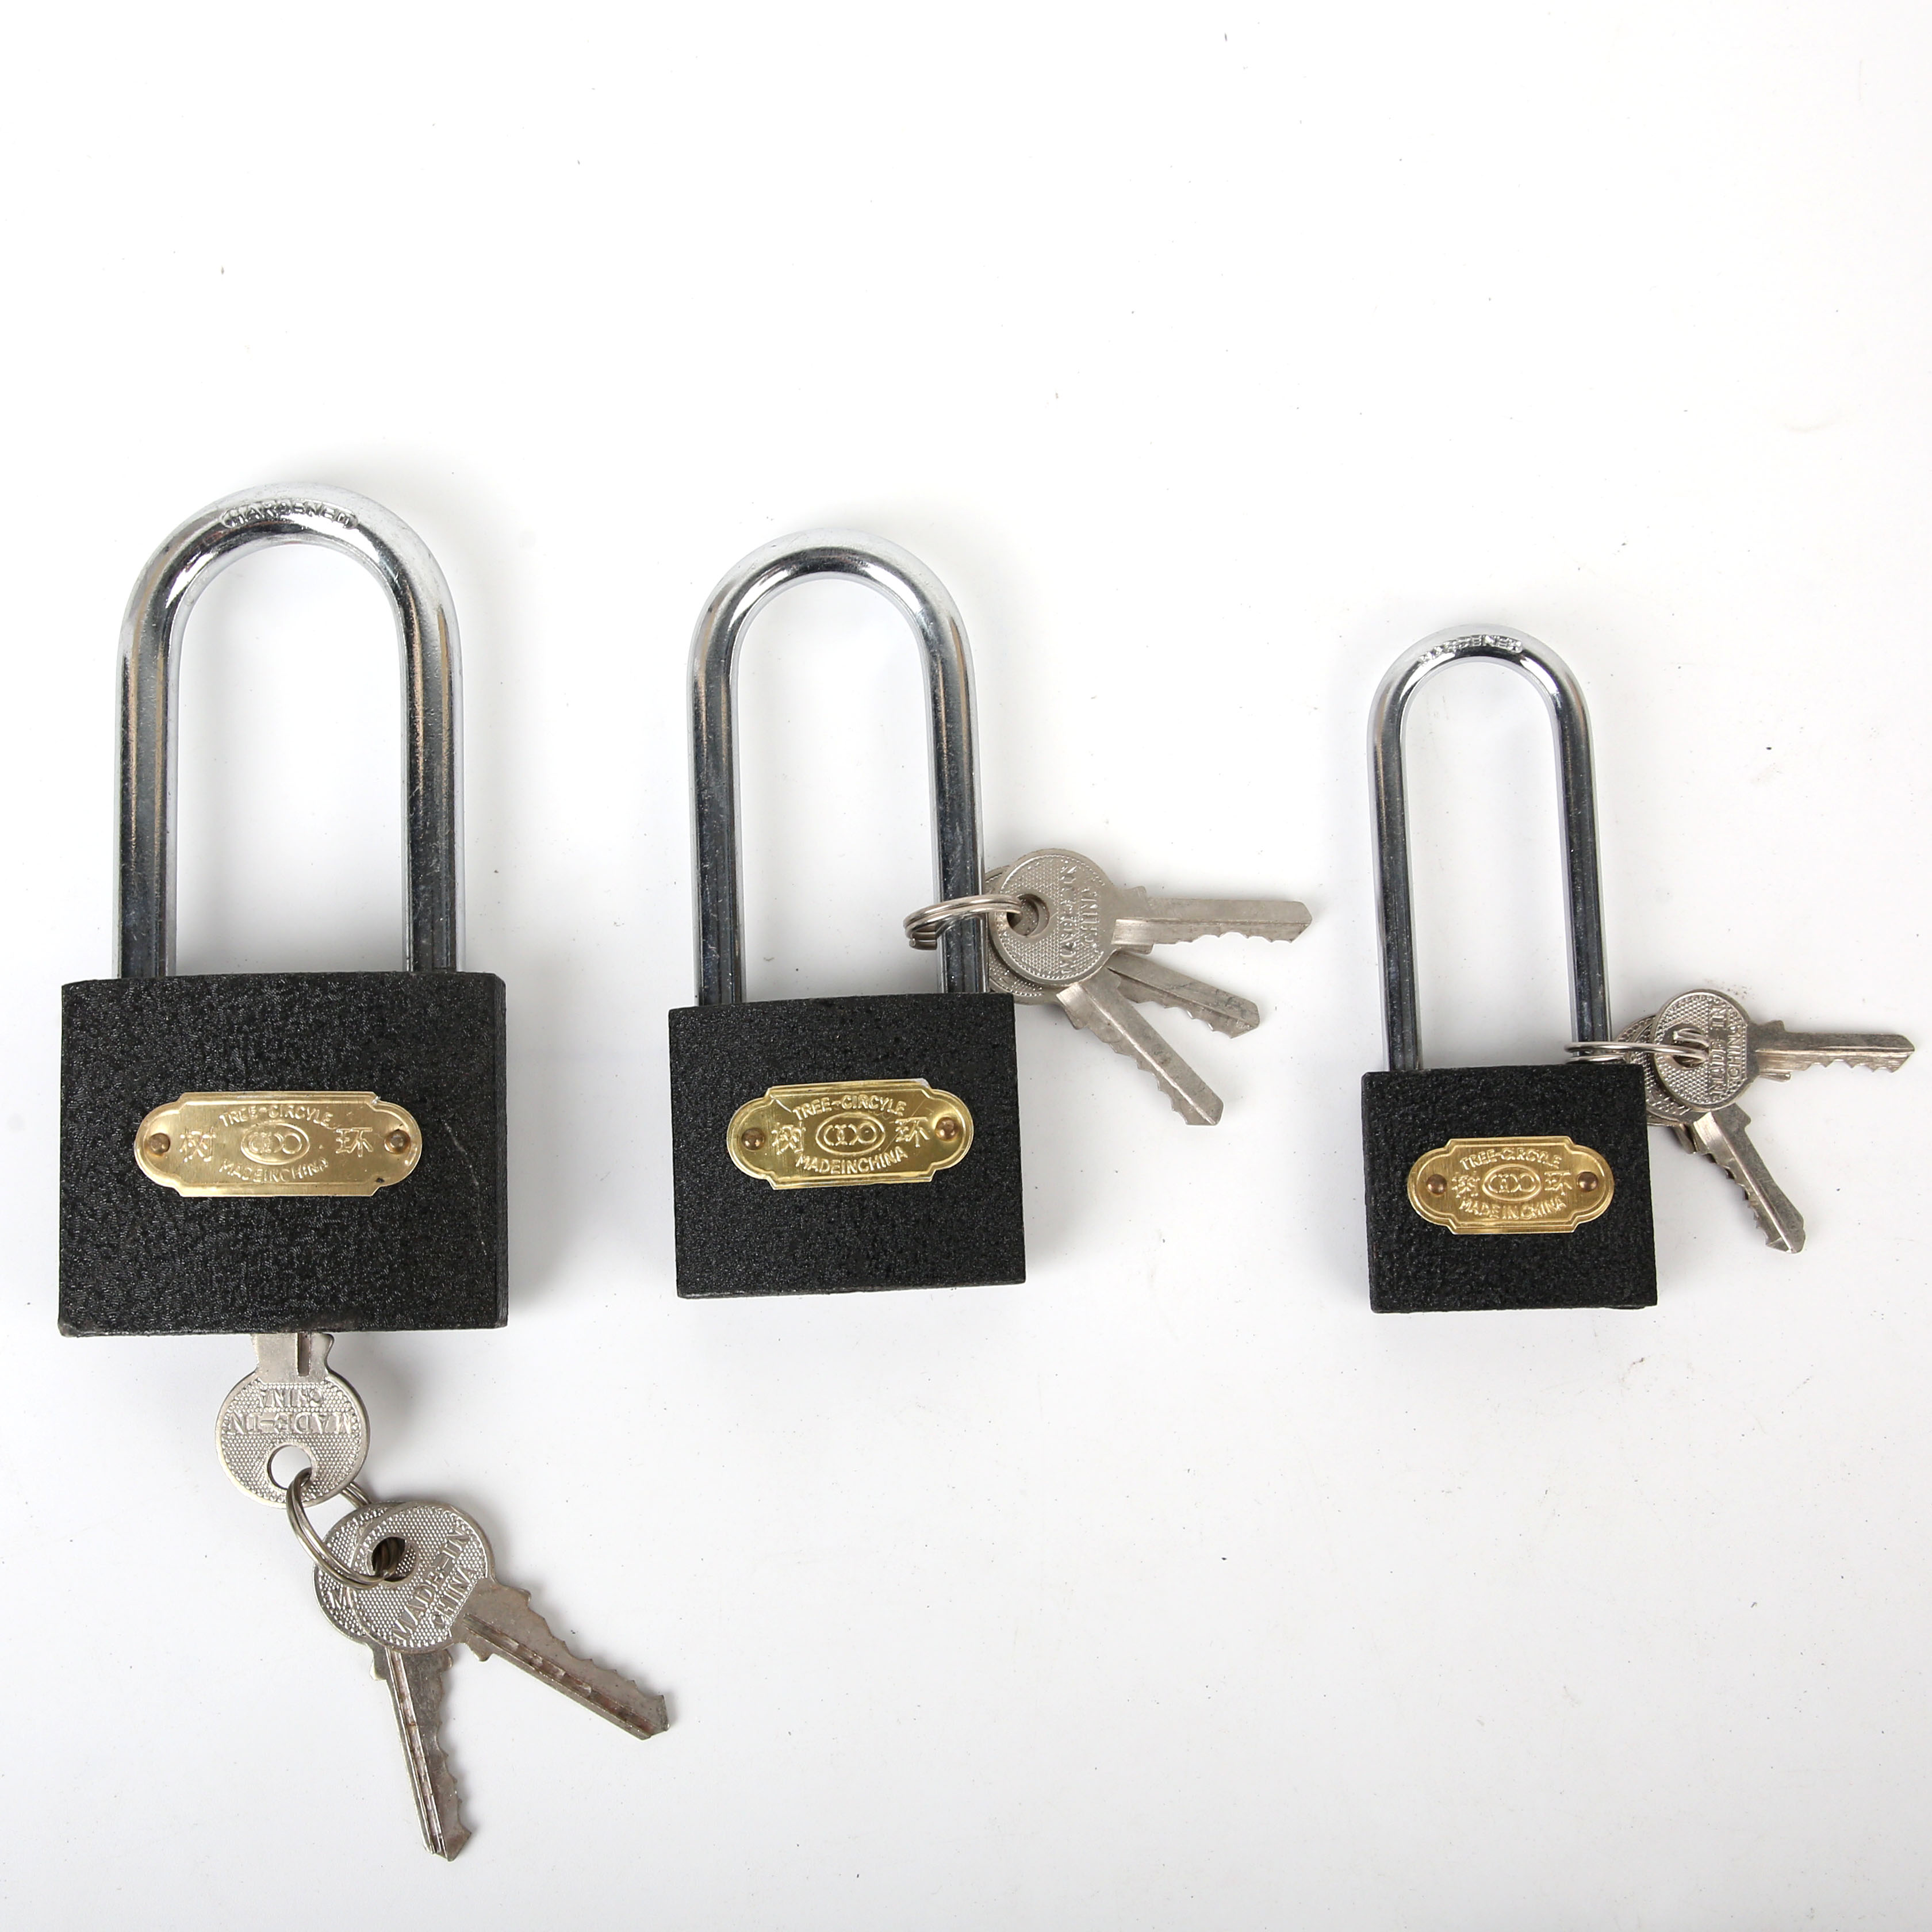 黑色锁，黑色长梁锁，锁，灰色锁，灰色长梁锁，长挂锁金色锁，砂光铜锁  十字锁，电镀锁，十字电镀锁，挂锁